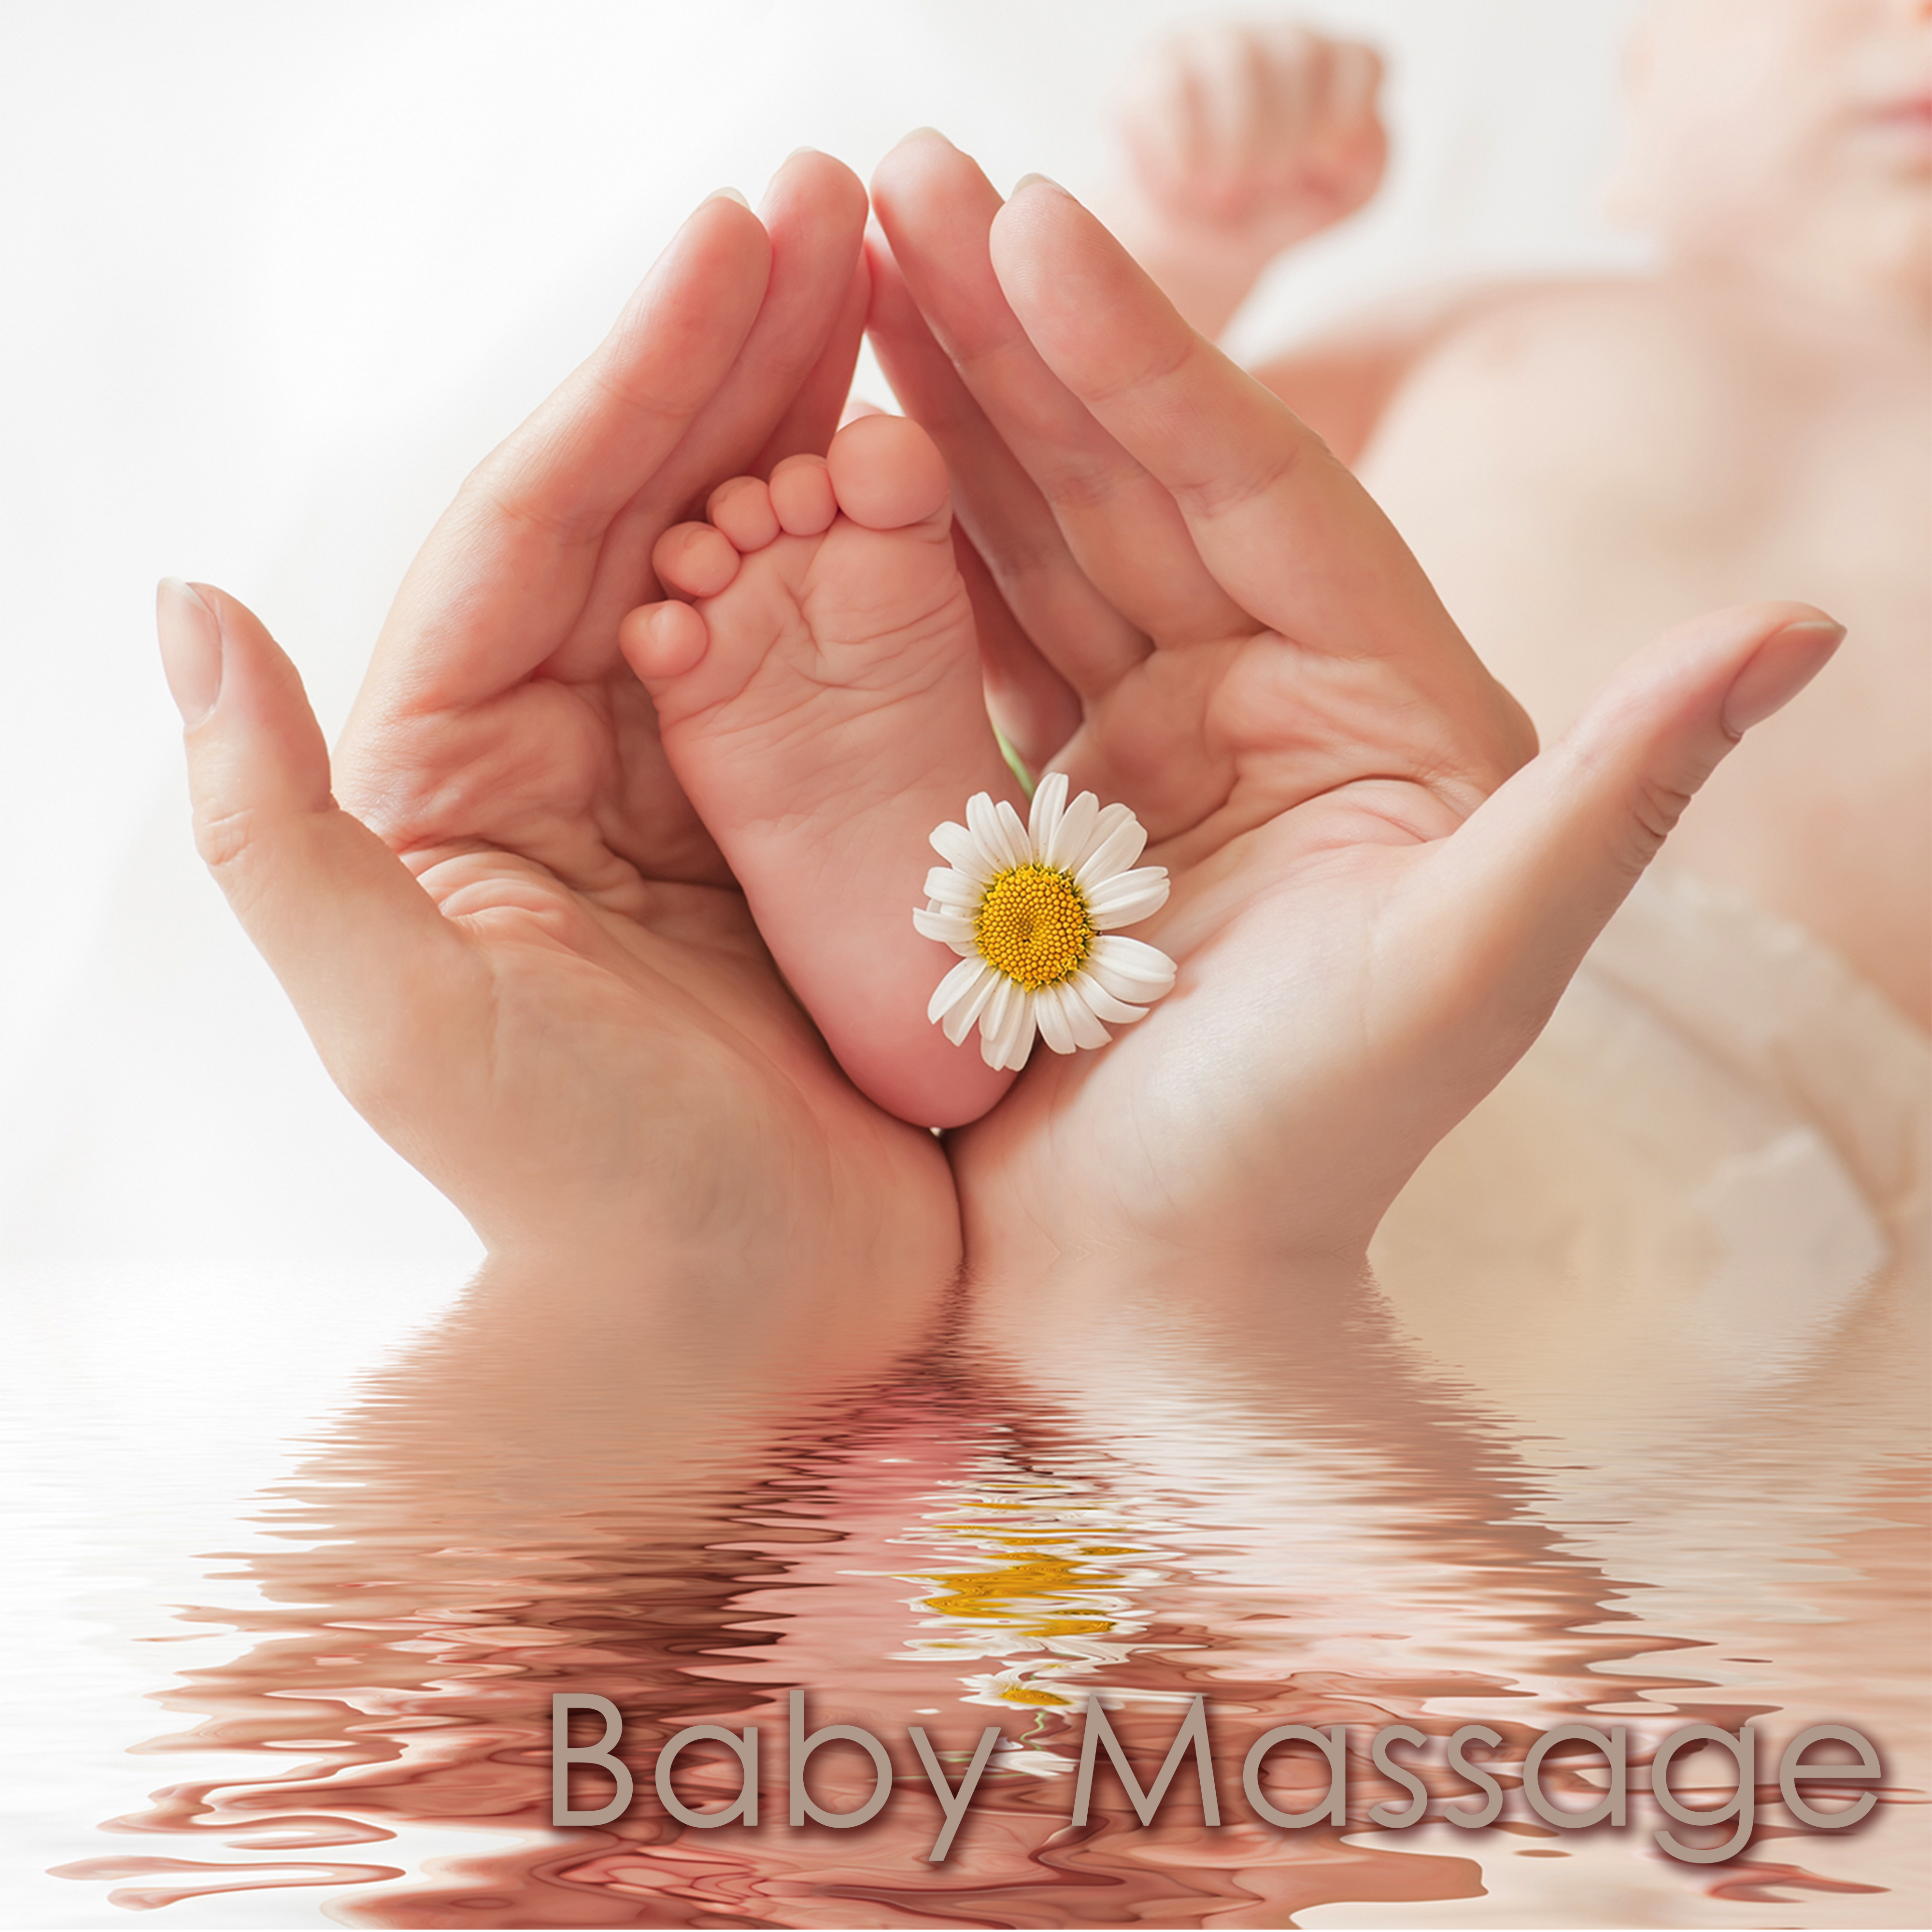 Baby Massage – Ayurvedic Massage Music for Newborn & Infants, Peaceful Spa Songs for Reflexology, Shiatsu & Aromatherapy